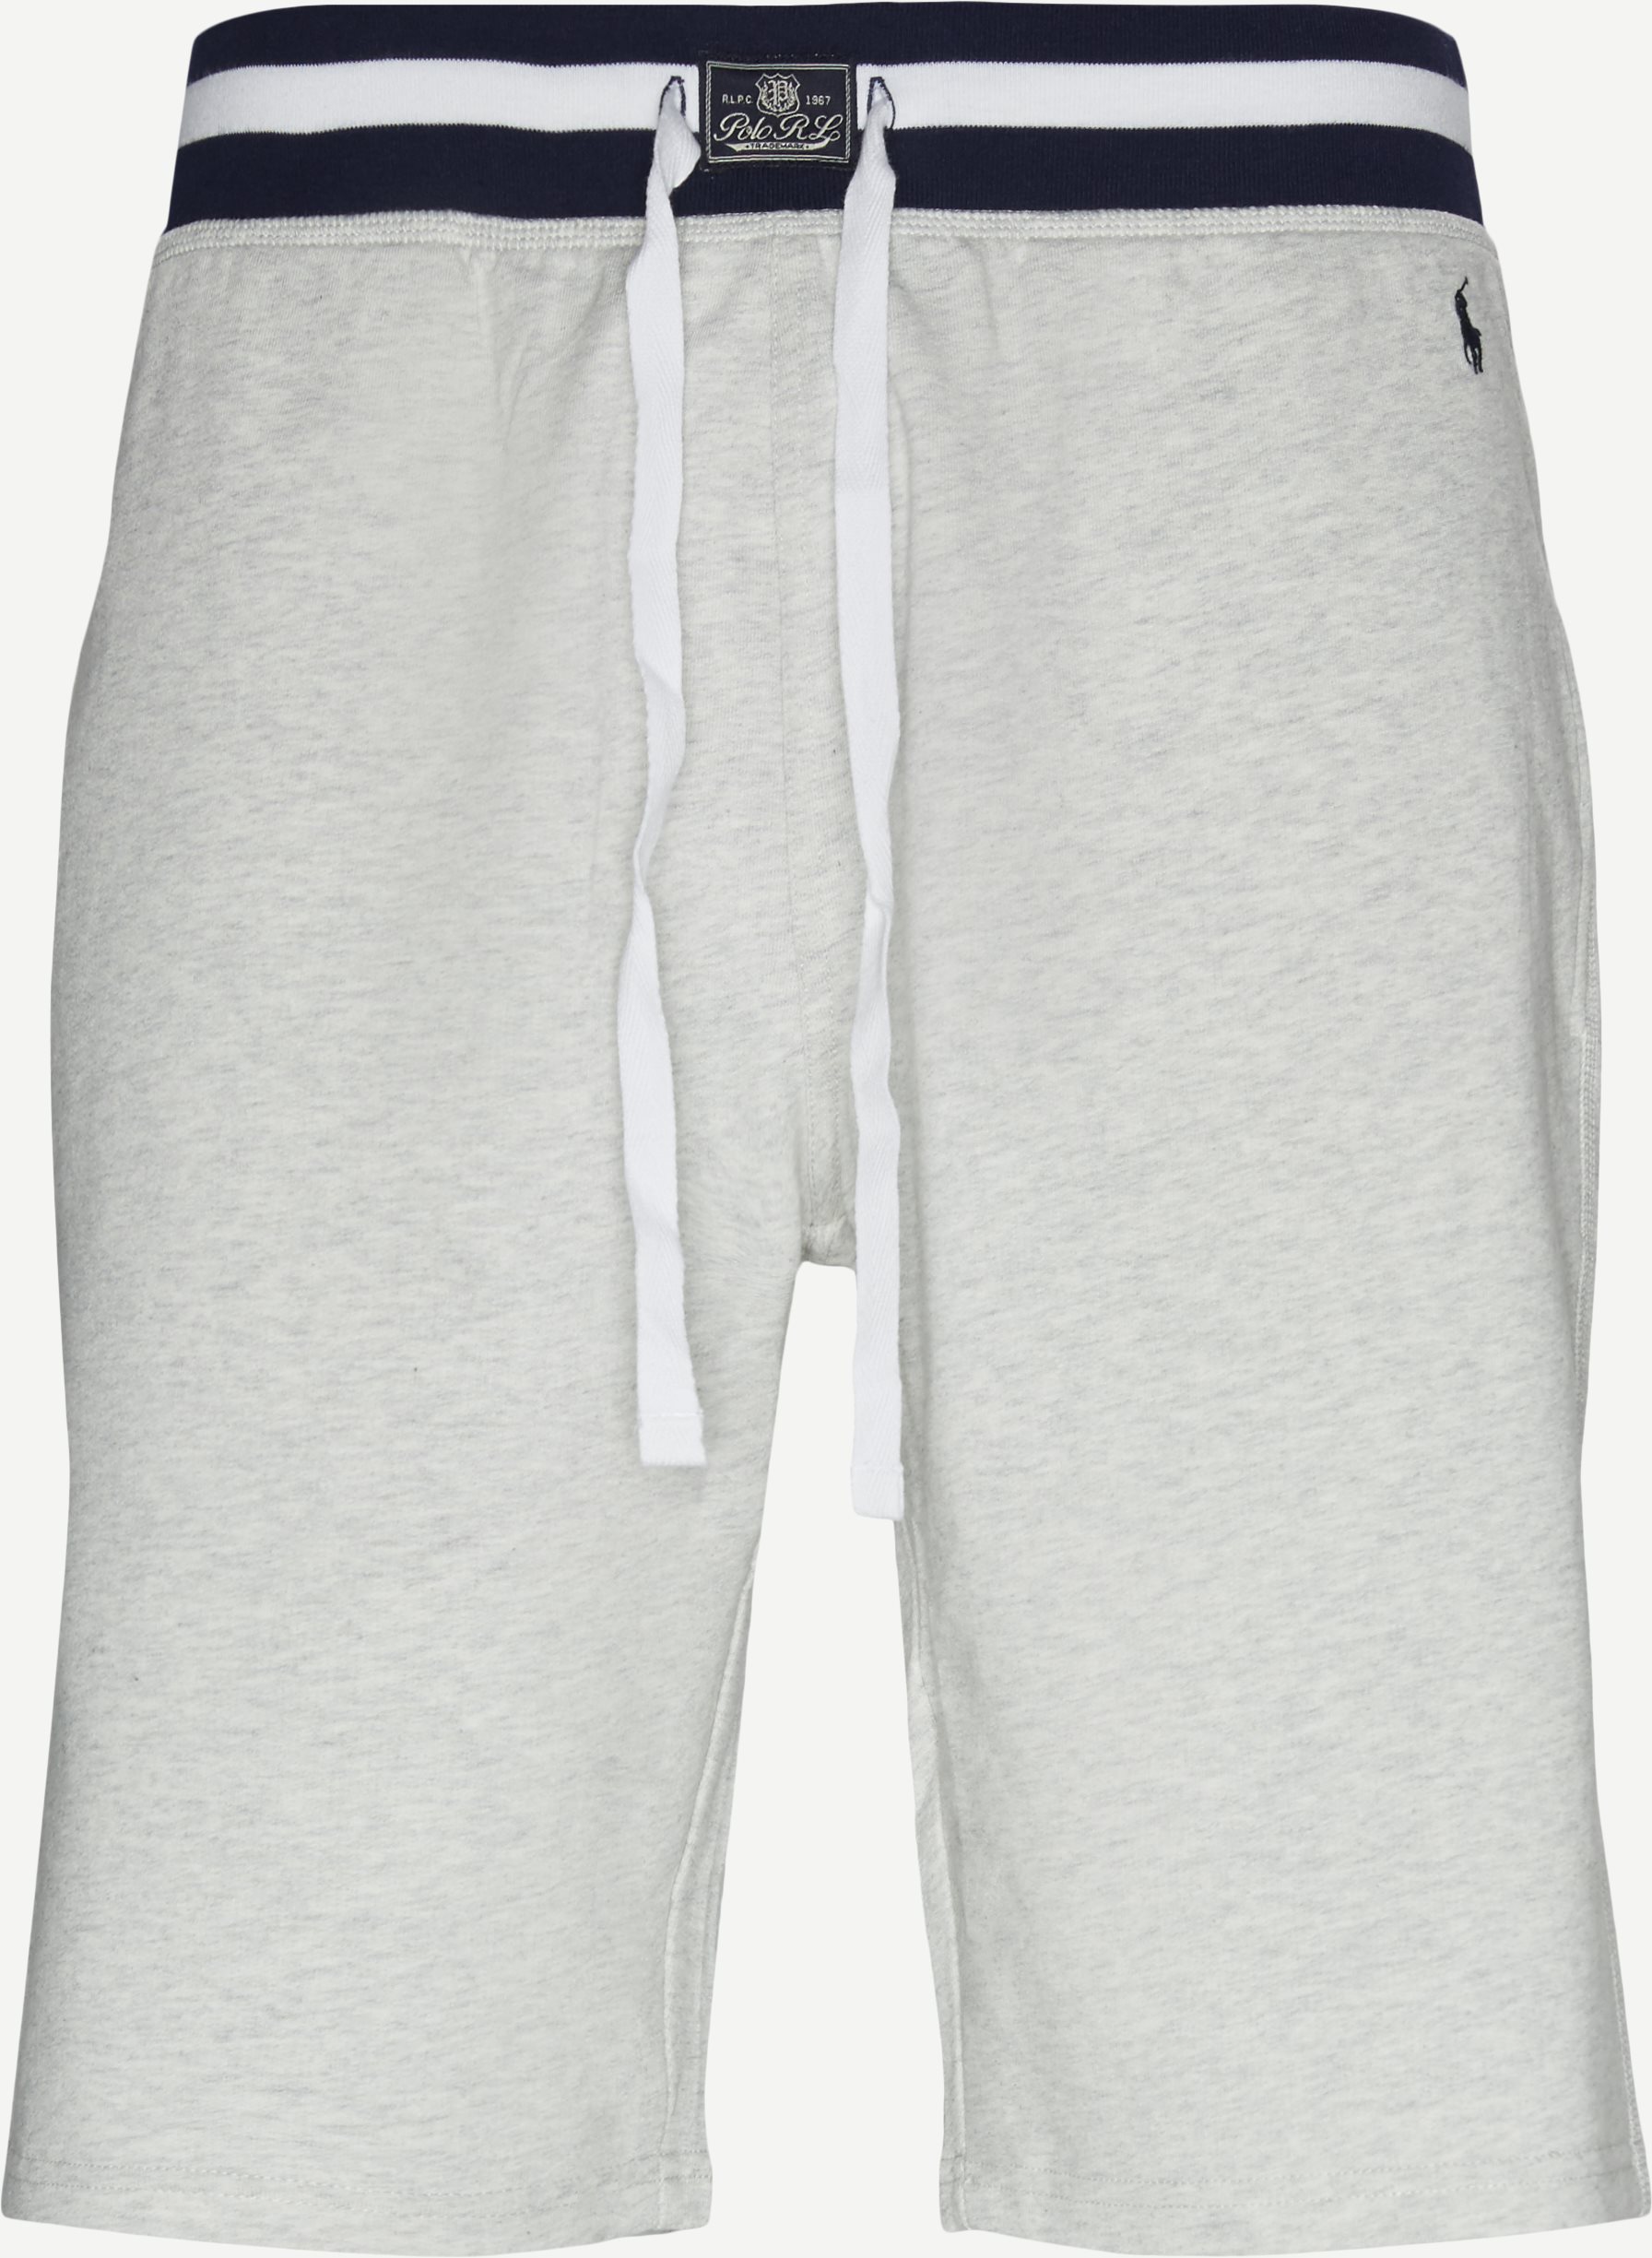 Shorts aus Baumwollfleece - Shorts - Regular fit - Grau